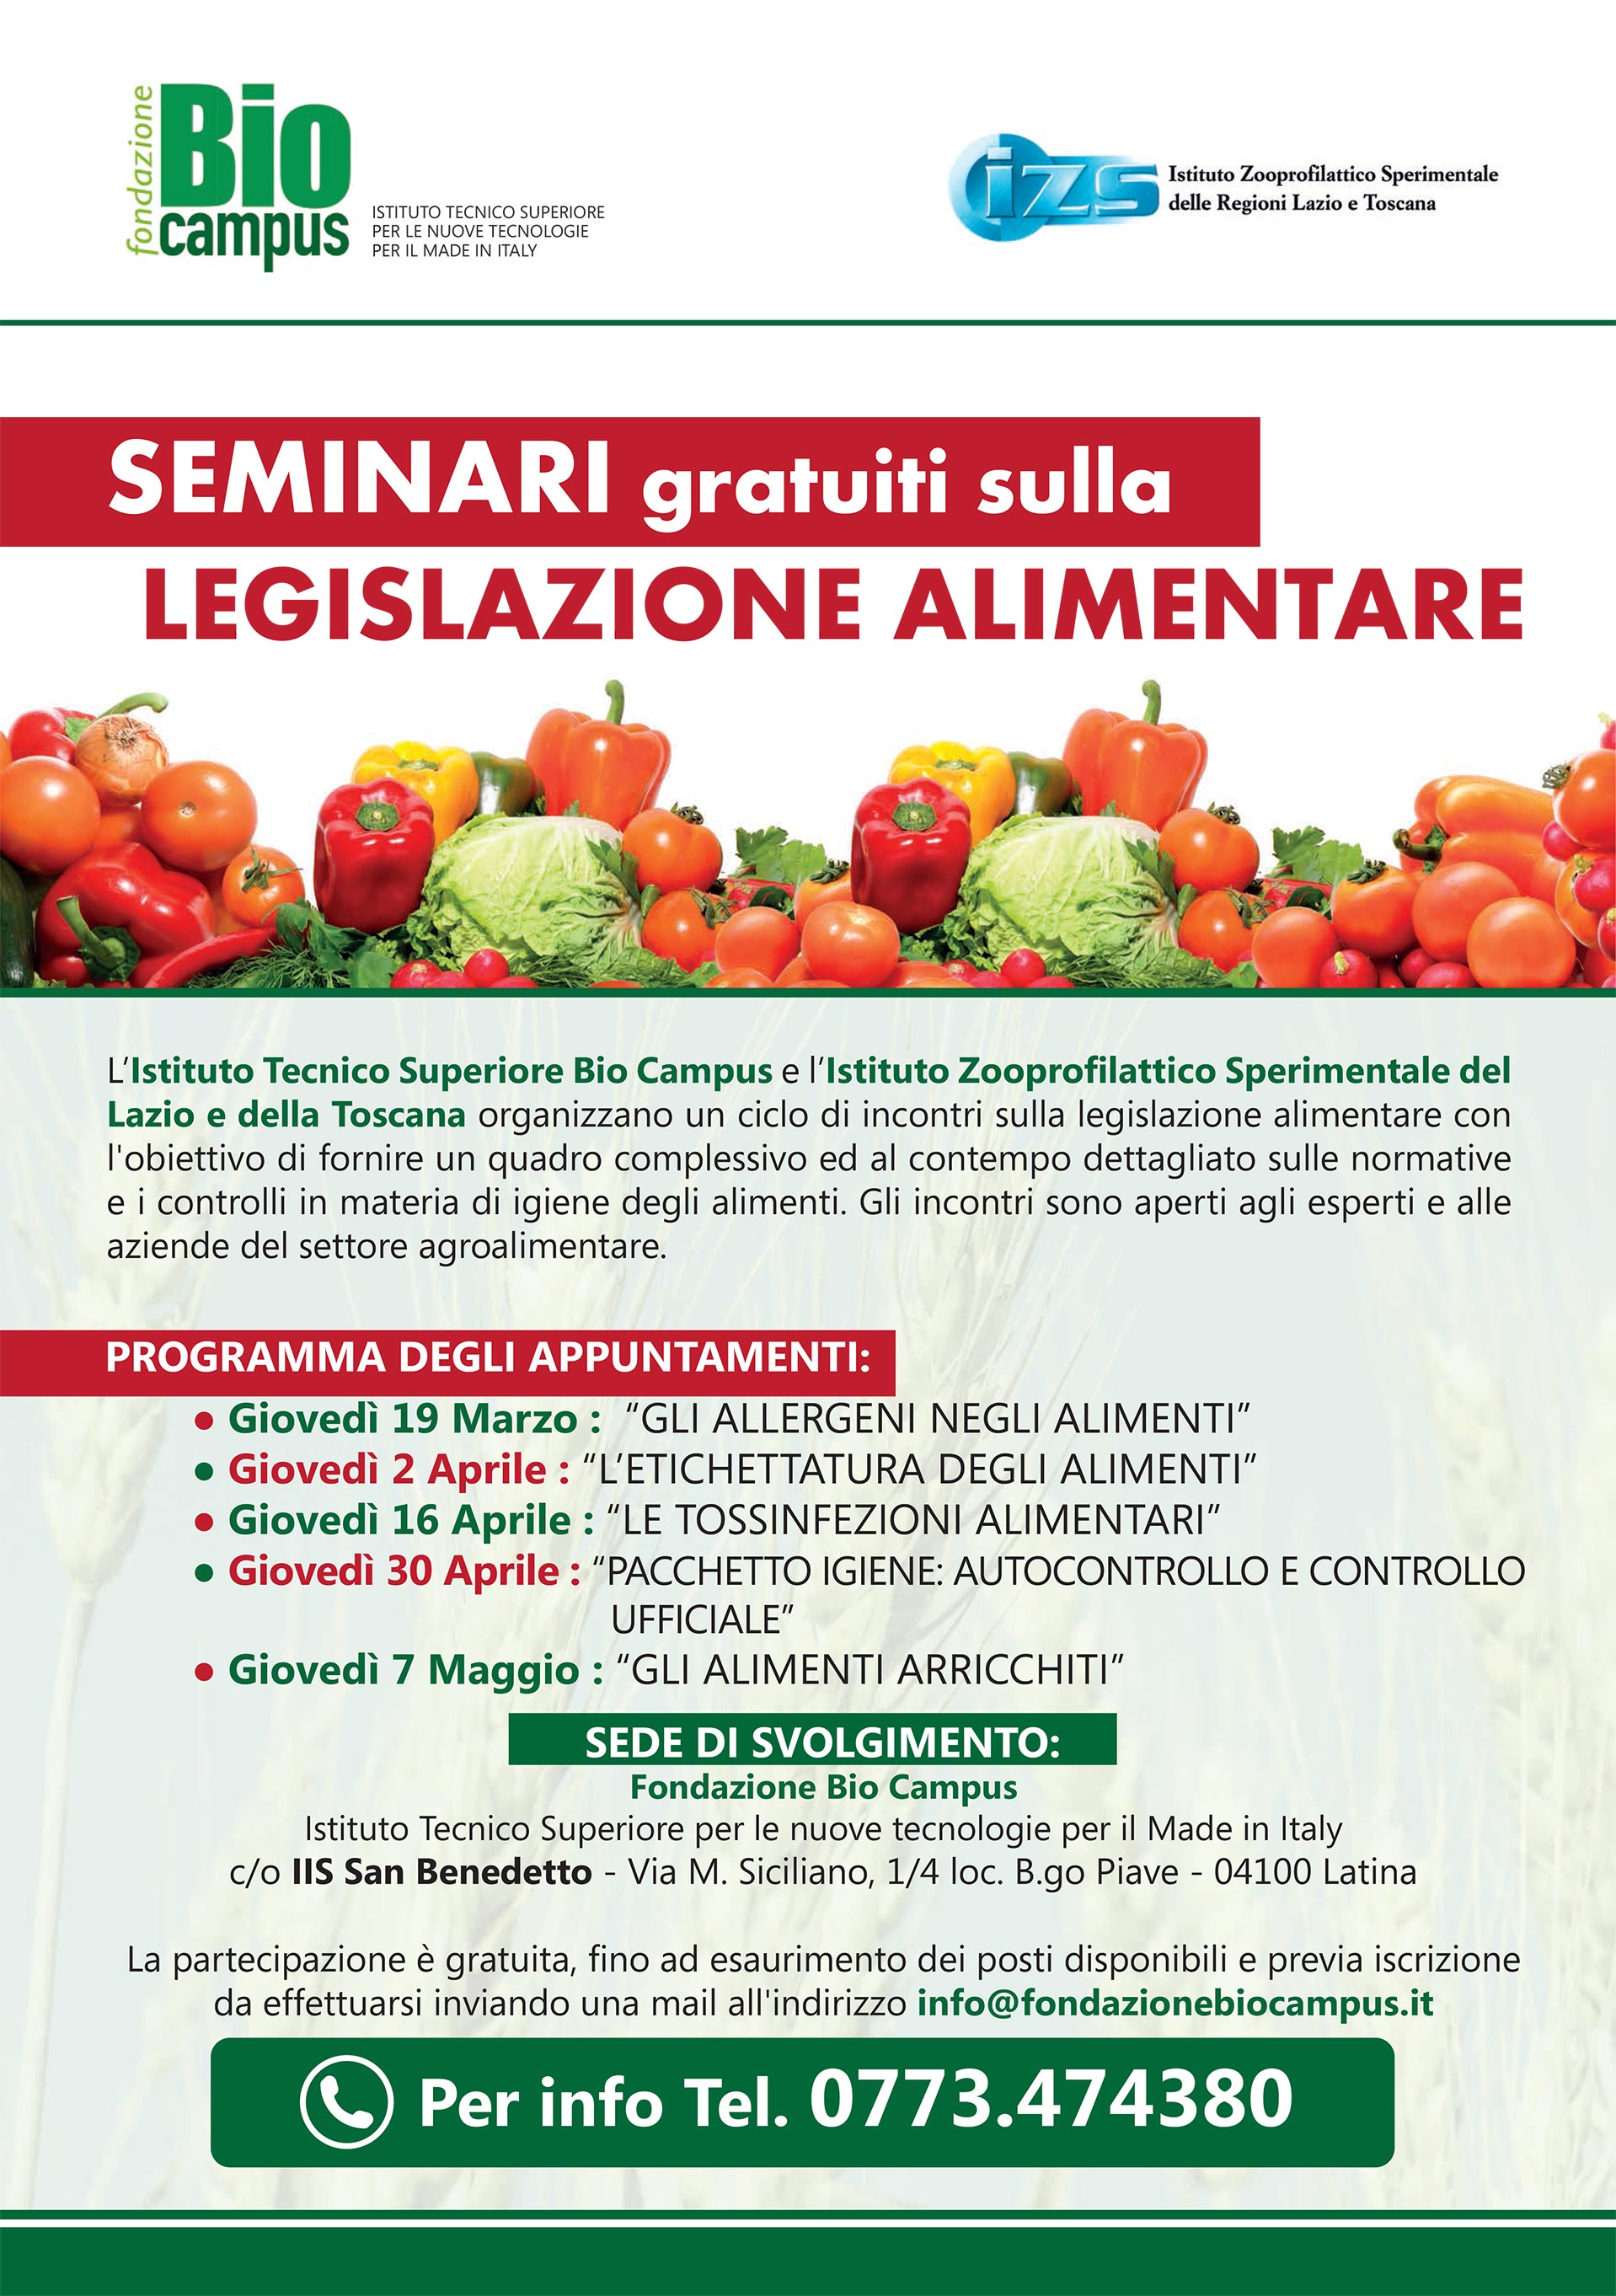 Legislazione Alimentare: i seminari gratuiti